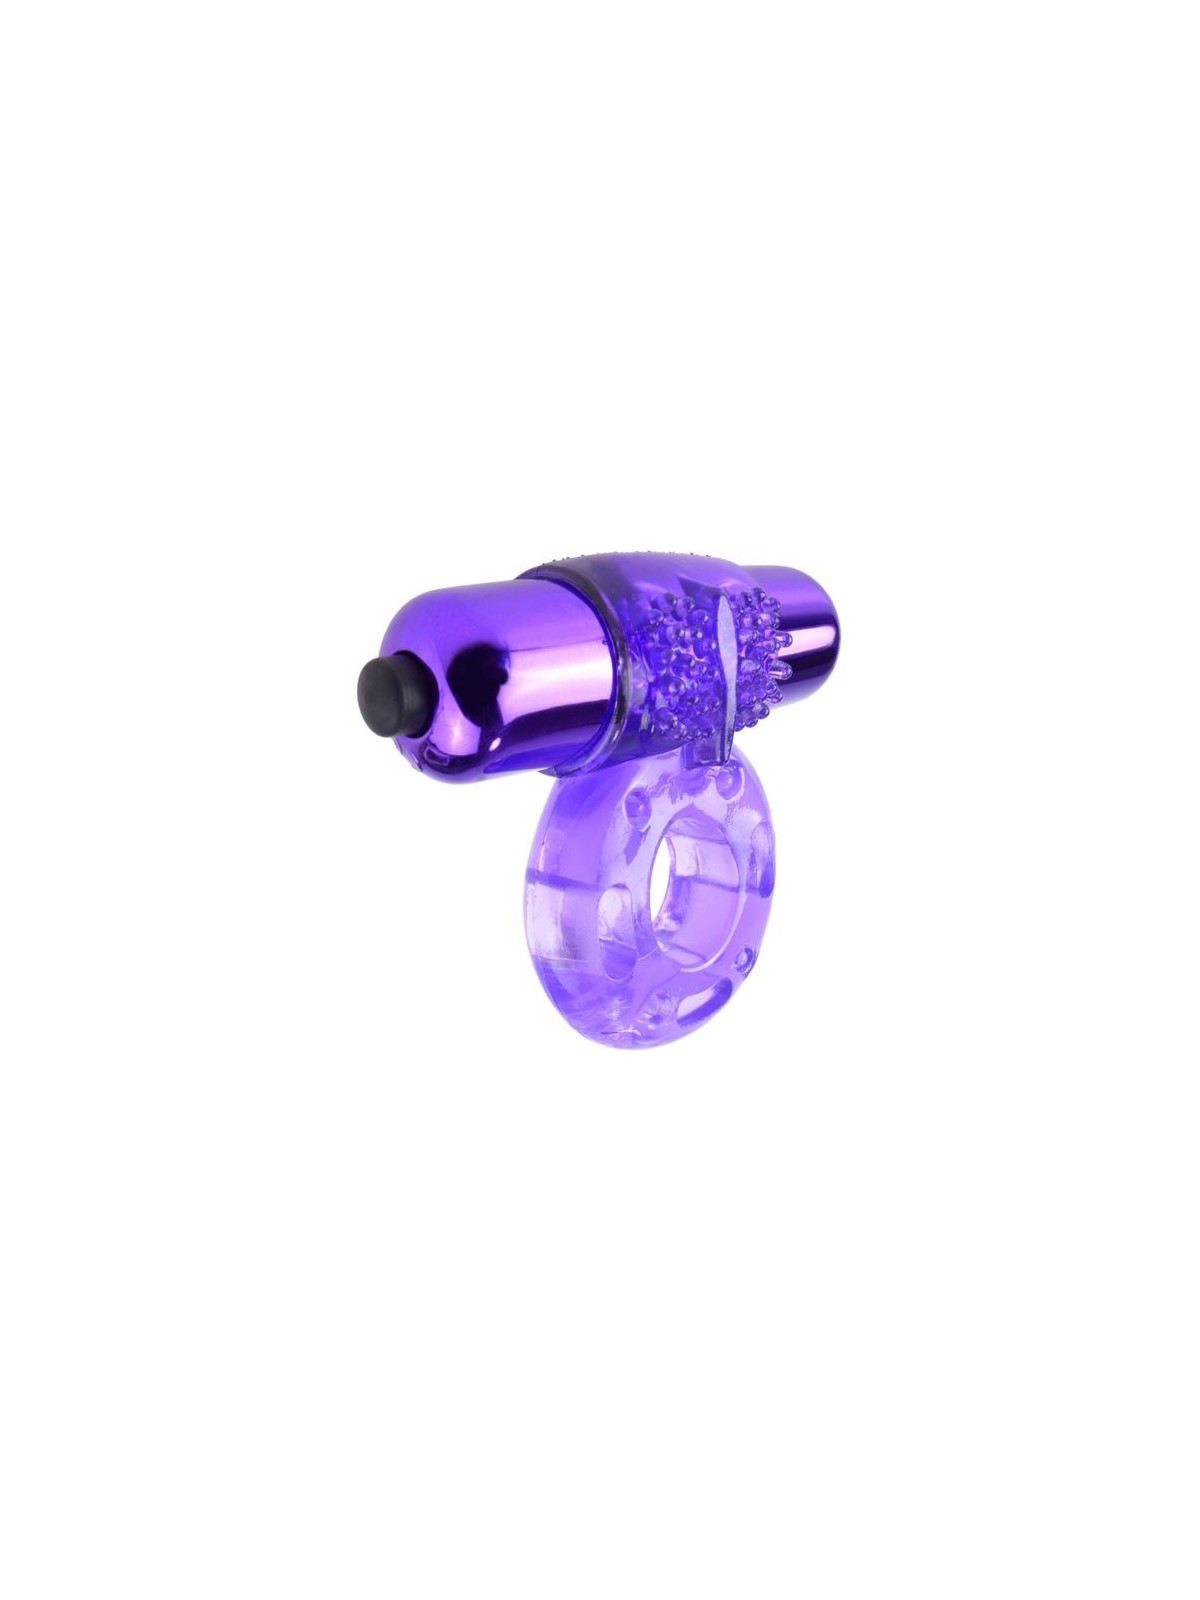 Fantasy C-Ringz Super Anillo Vibrador - Comprar Anillo vibrador pene Fantasy C-Ringz - Anillos vibradores pene (1)